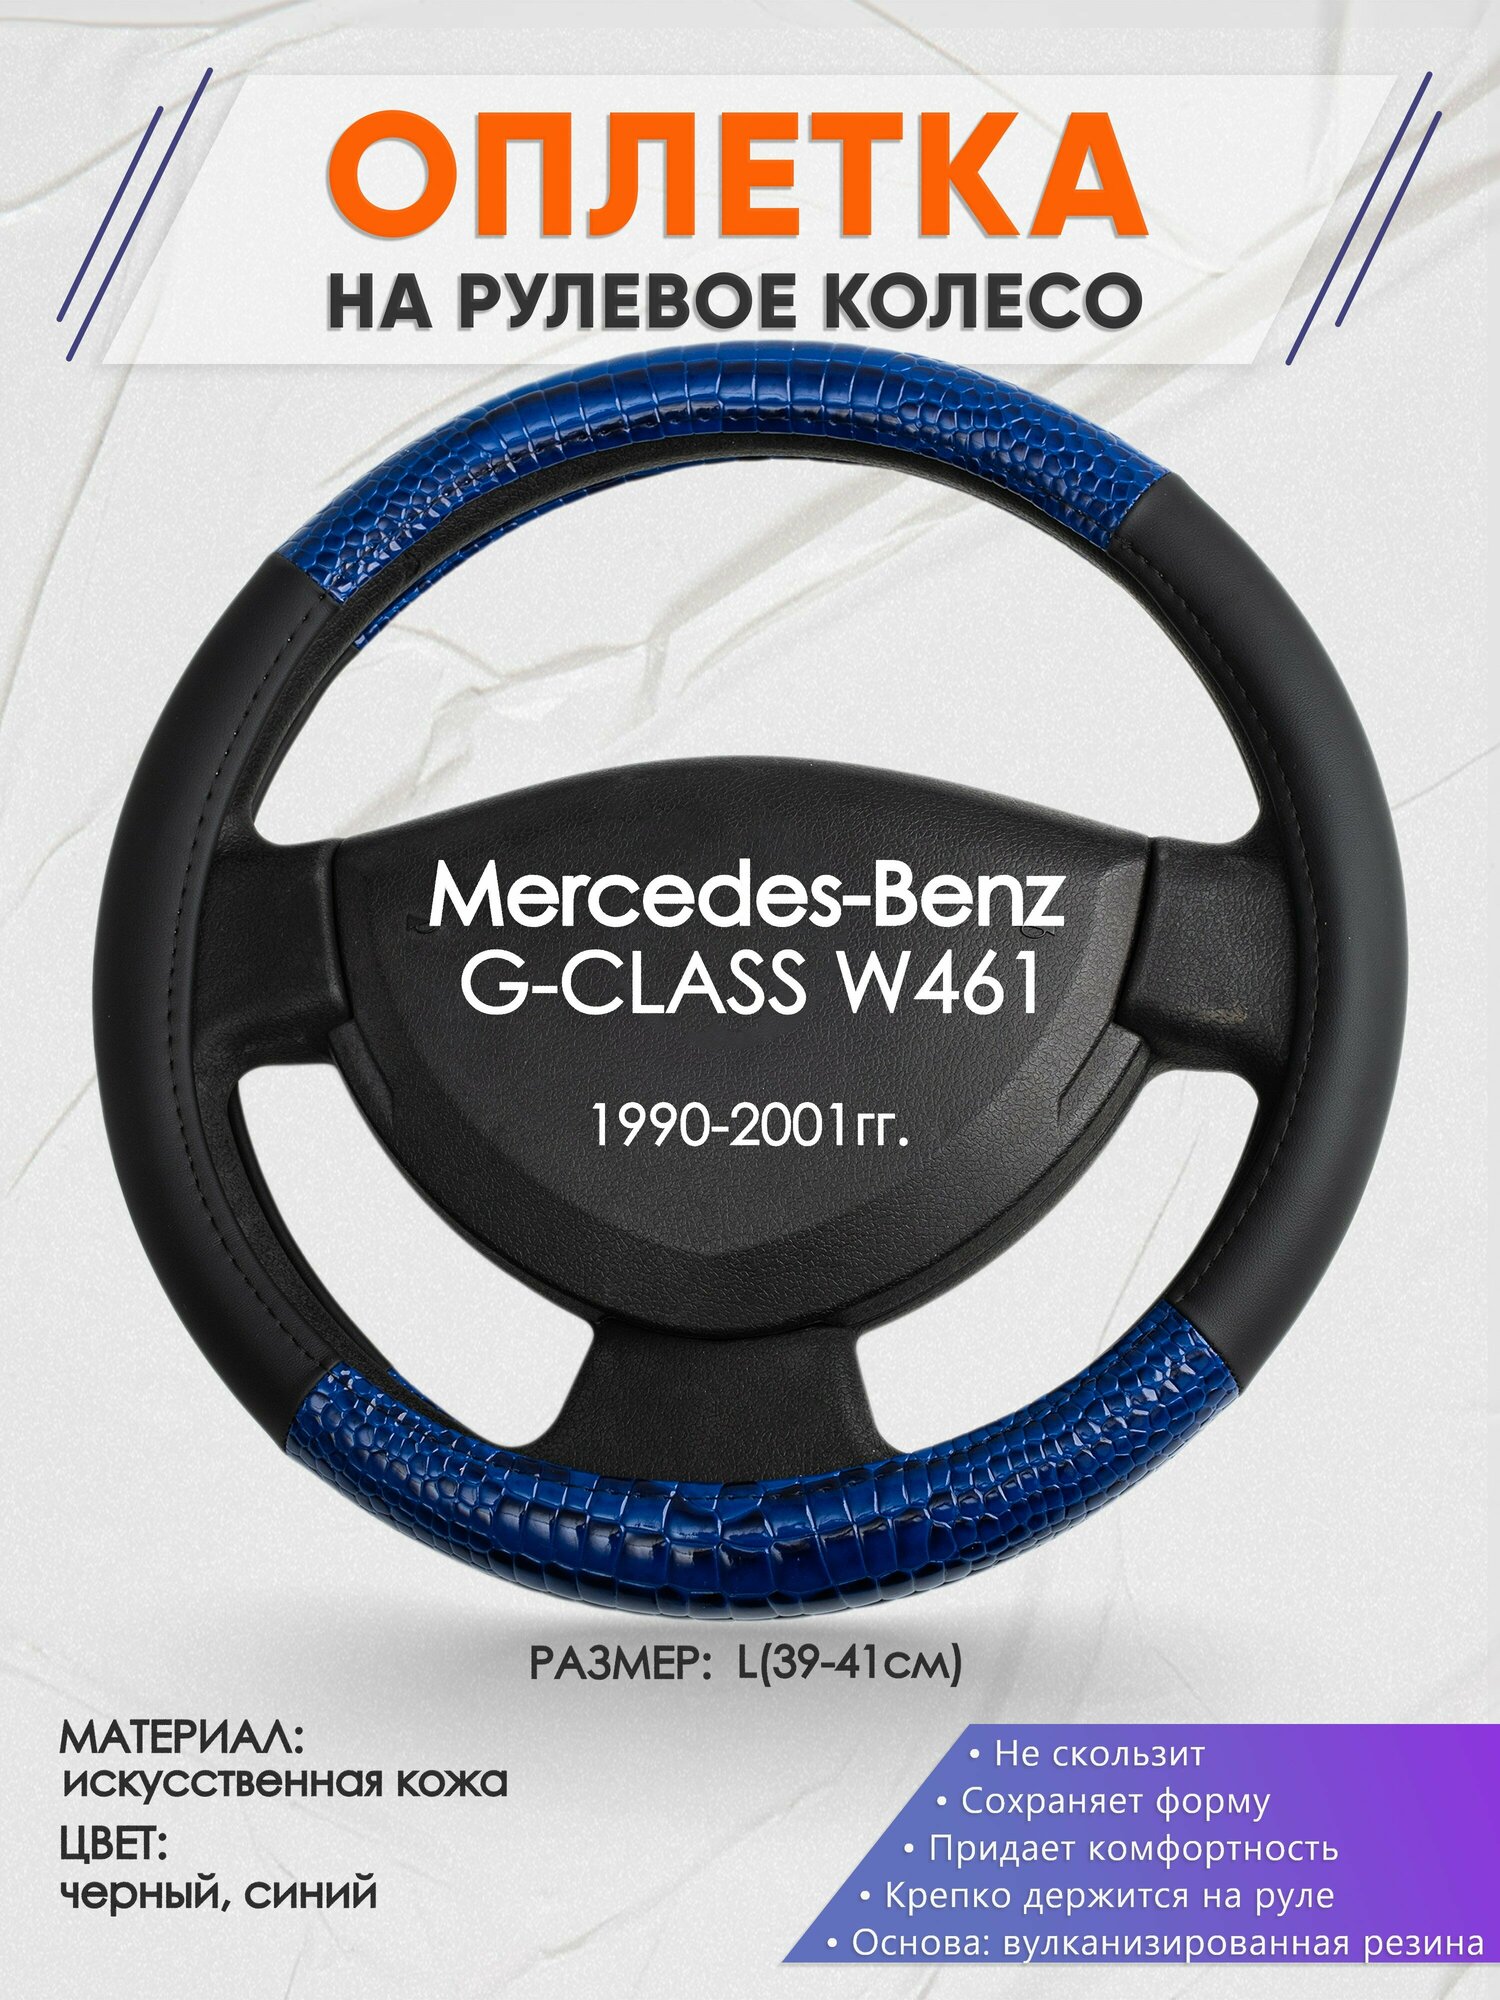 Оплетка на руль для Mercedes-Benz G-CLASS W461(Мерседес Бенц Г Класс) 1990-2001, L(39-41см), Искусственная кожа 82